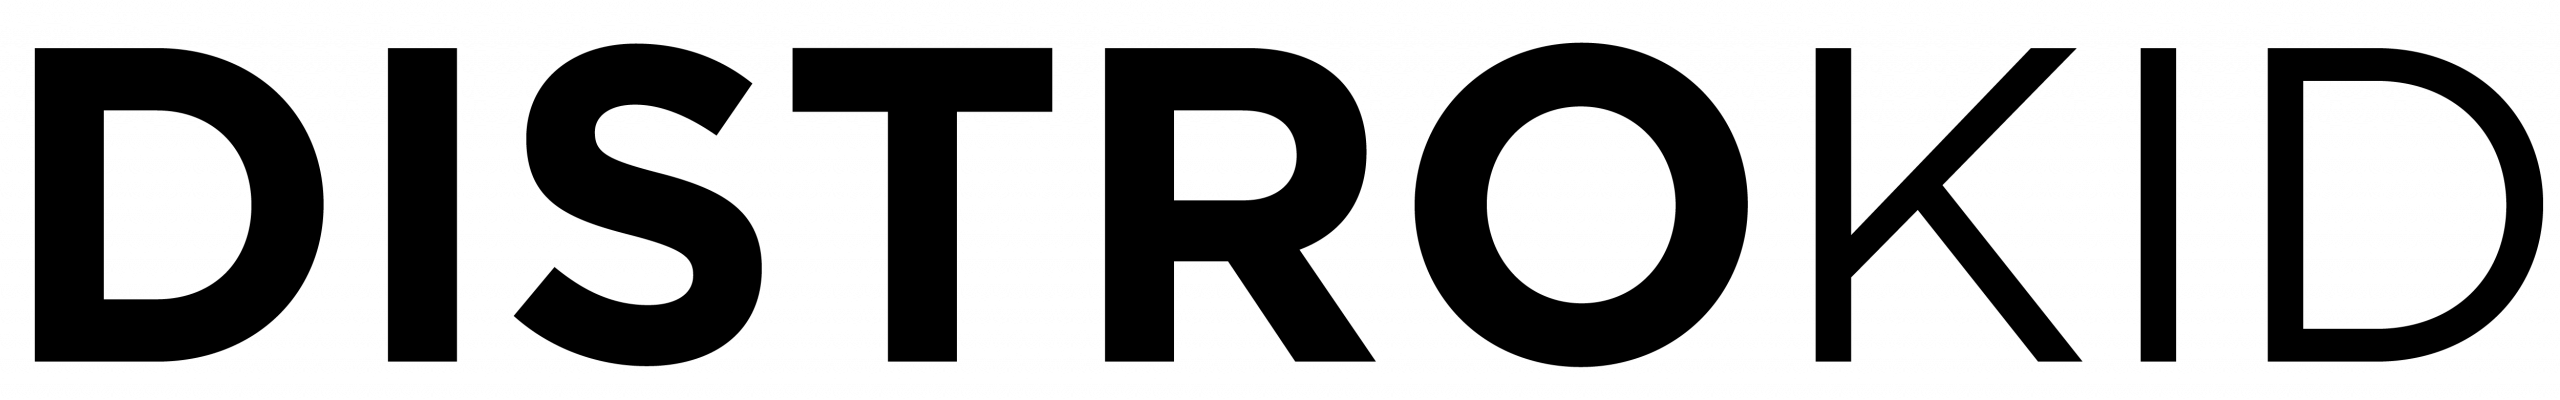 disrtokid logo